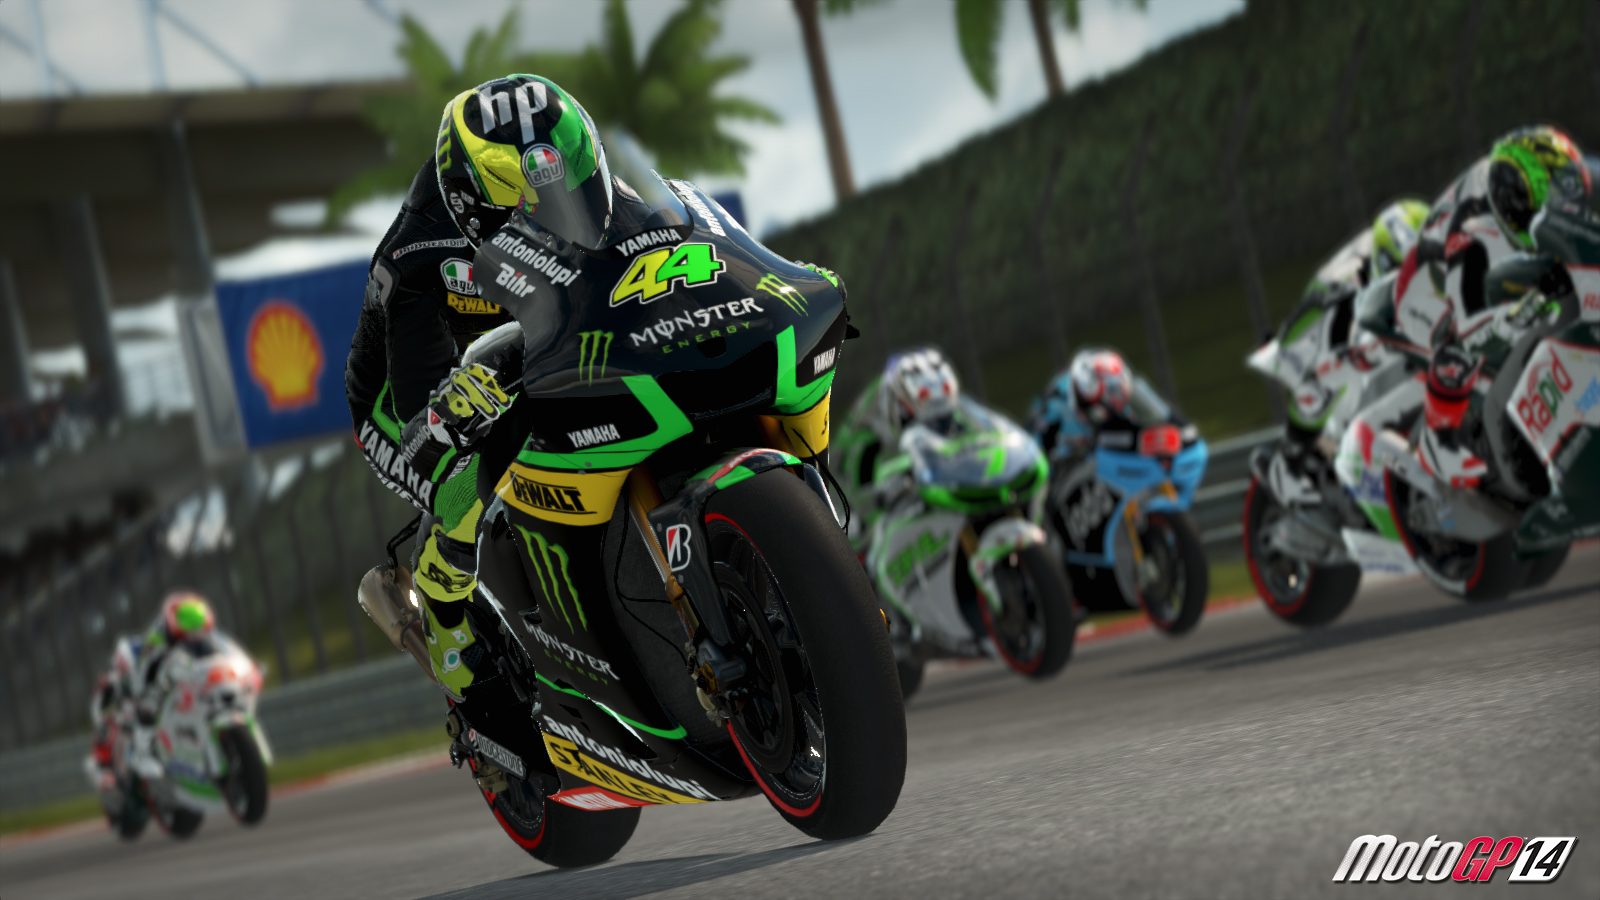 MotoGP 14 Backgrounds, Compatible - PC, Mobile, Gadgets| 1600x900 px